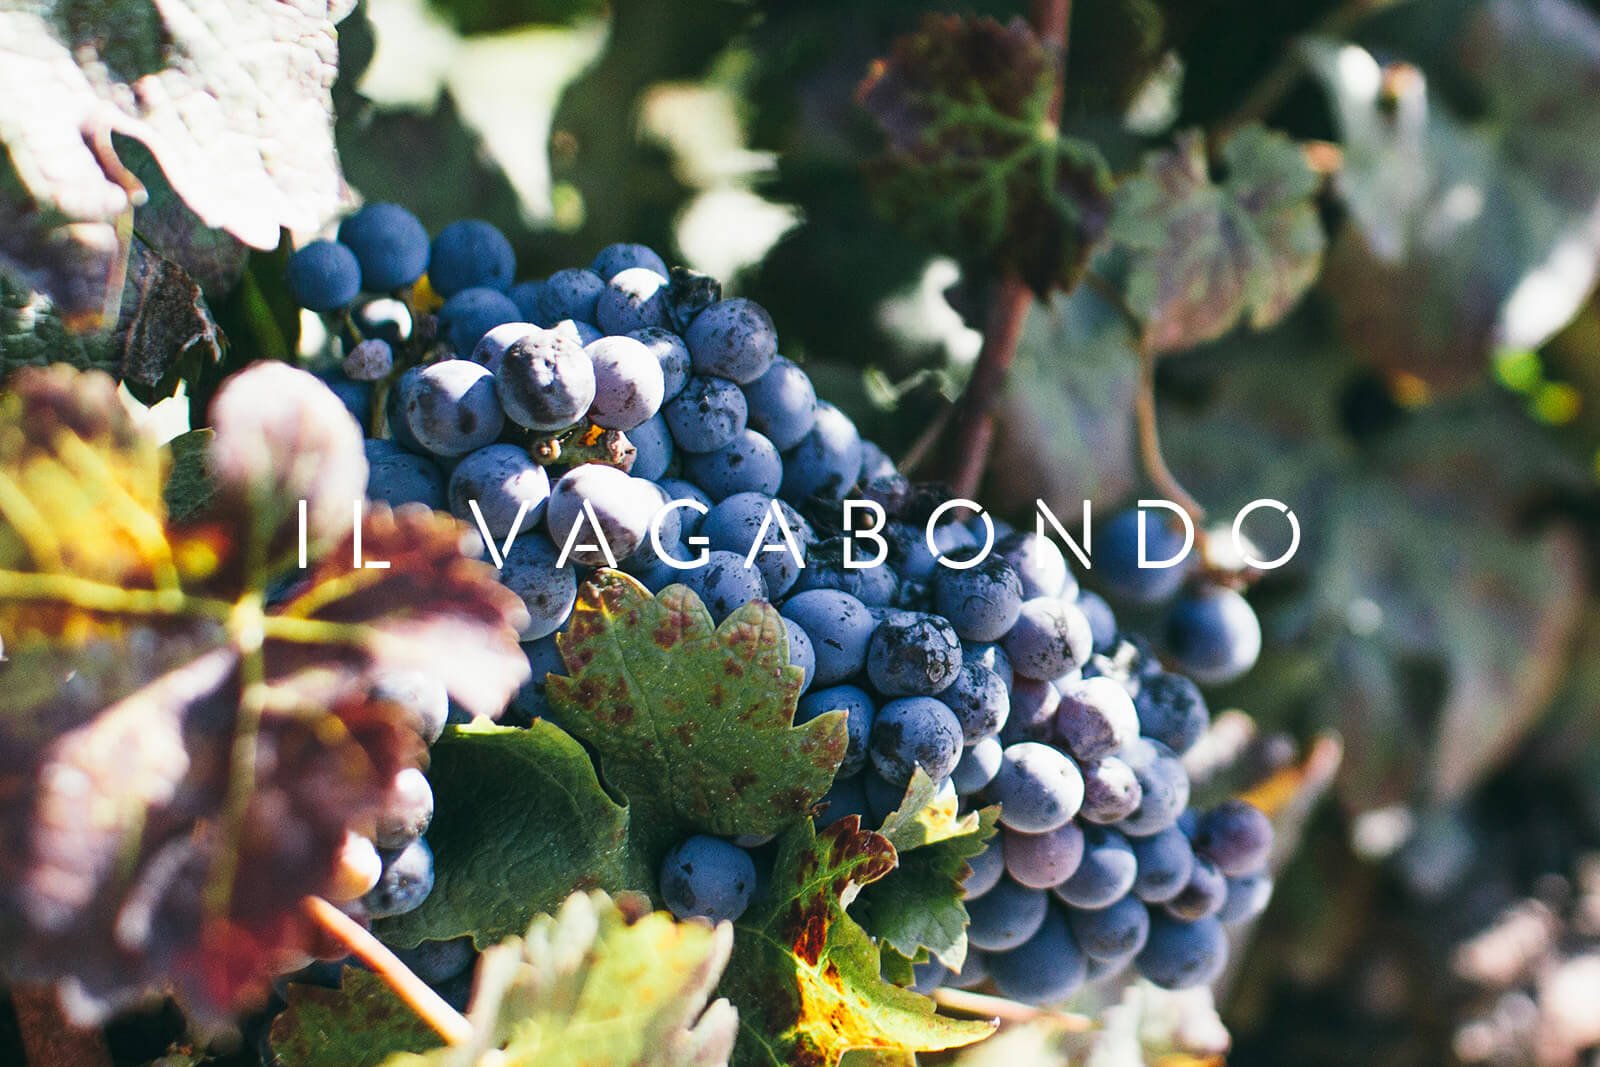 Il Vagabondo wordmark over grapes on a vine